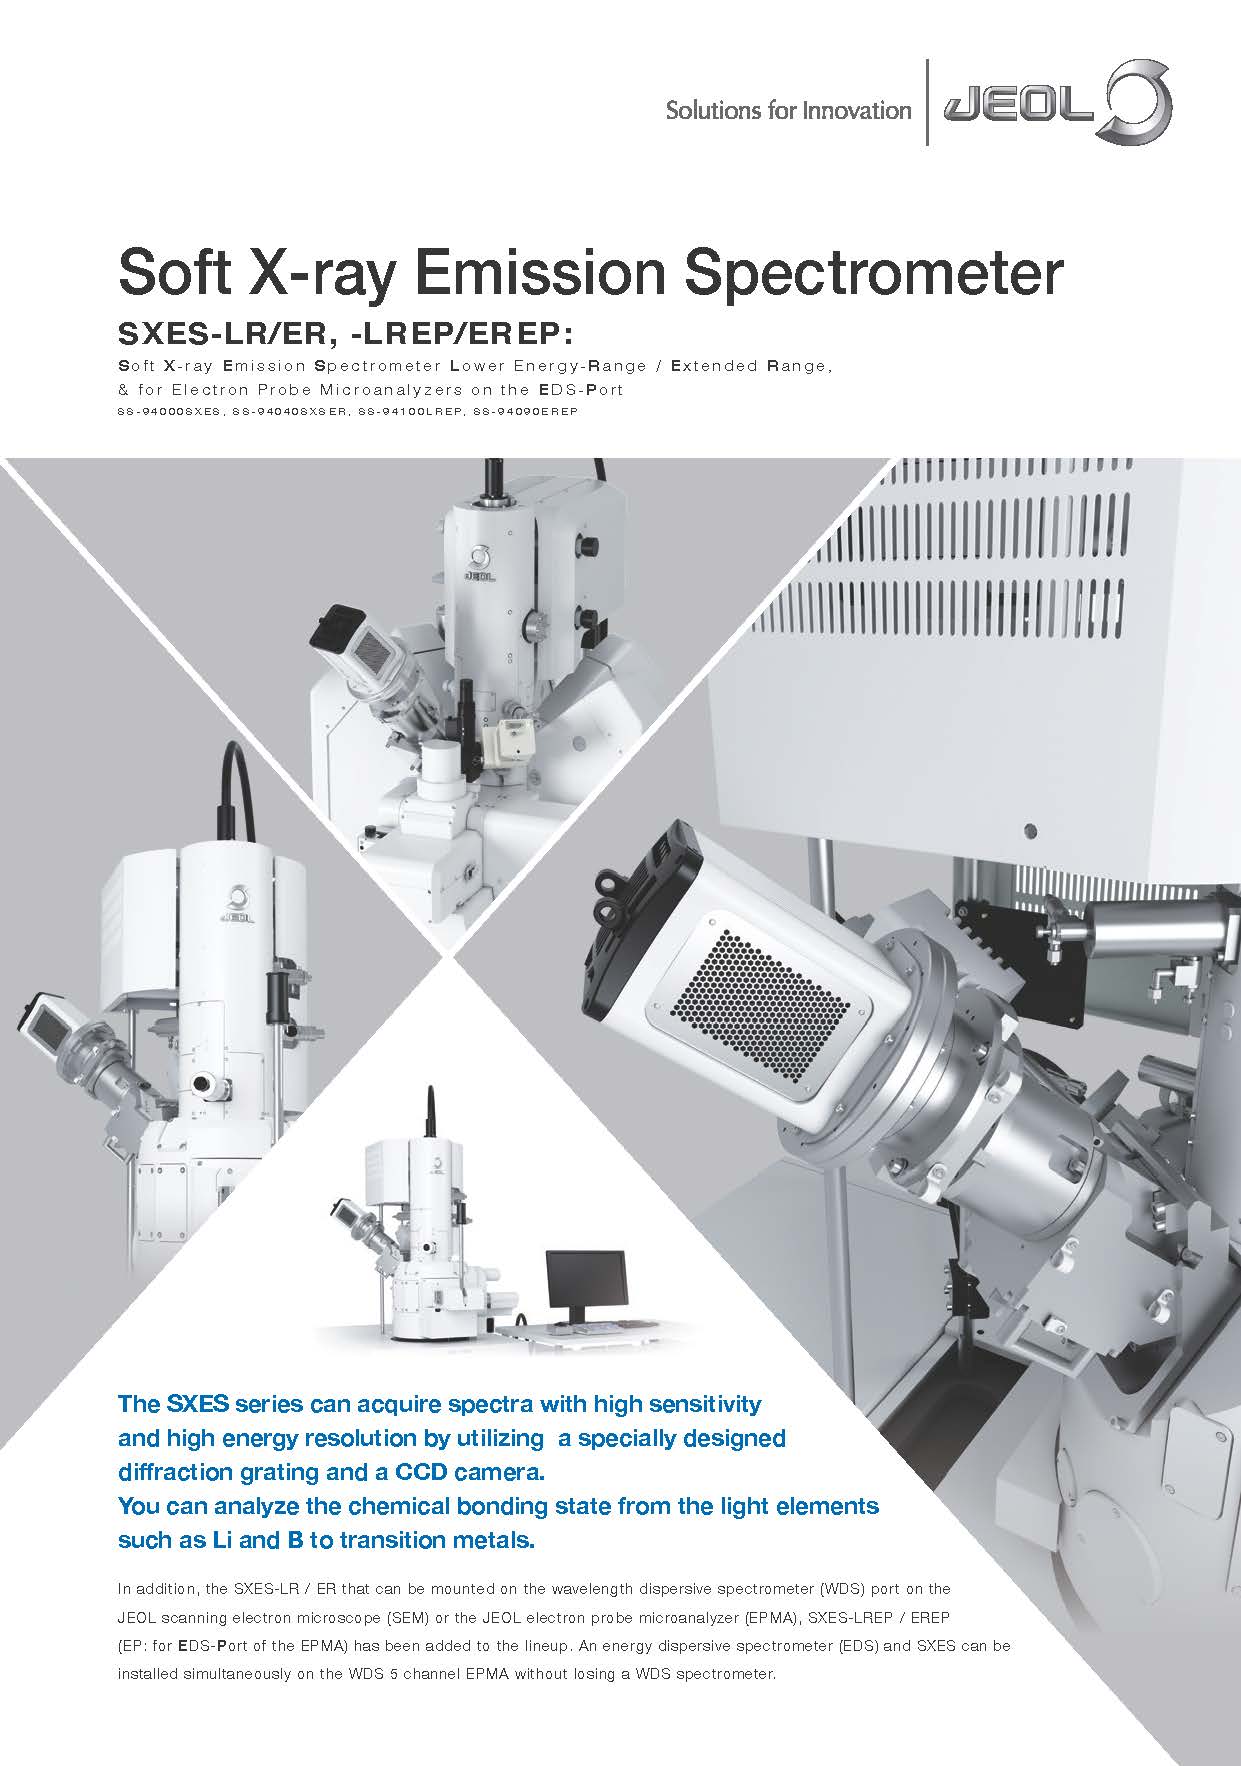 Soft X-ray Emission Spectrometer
SXES-LR/ER, -LREP/EREP